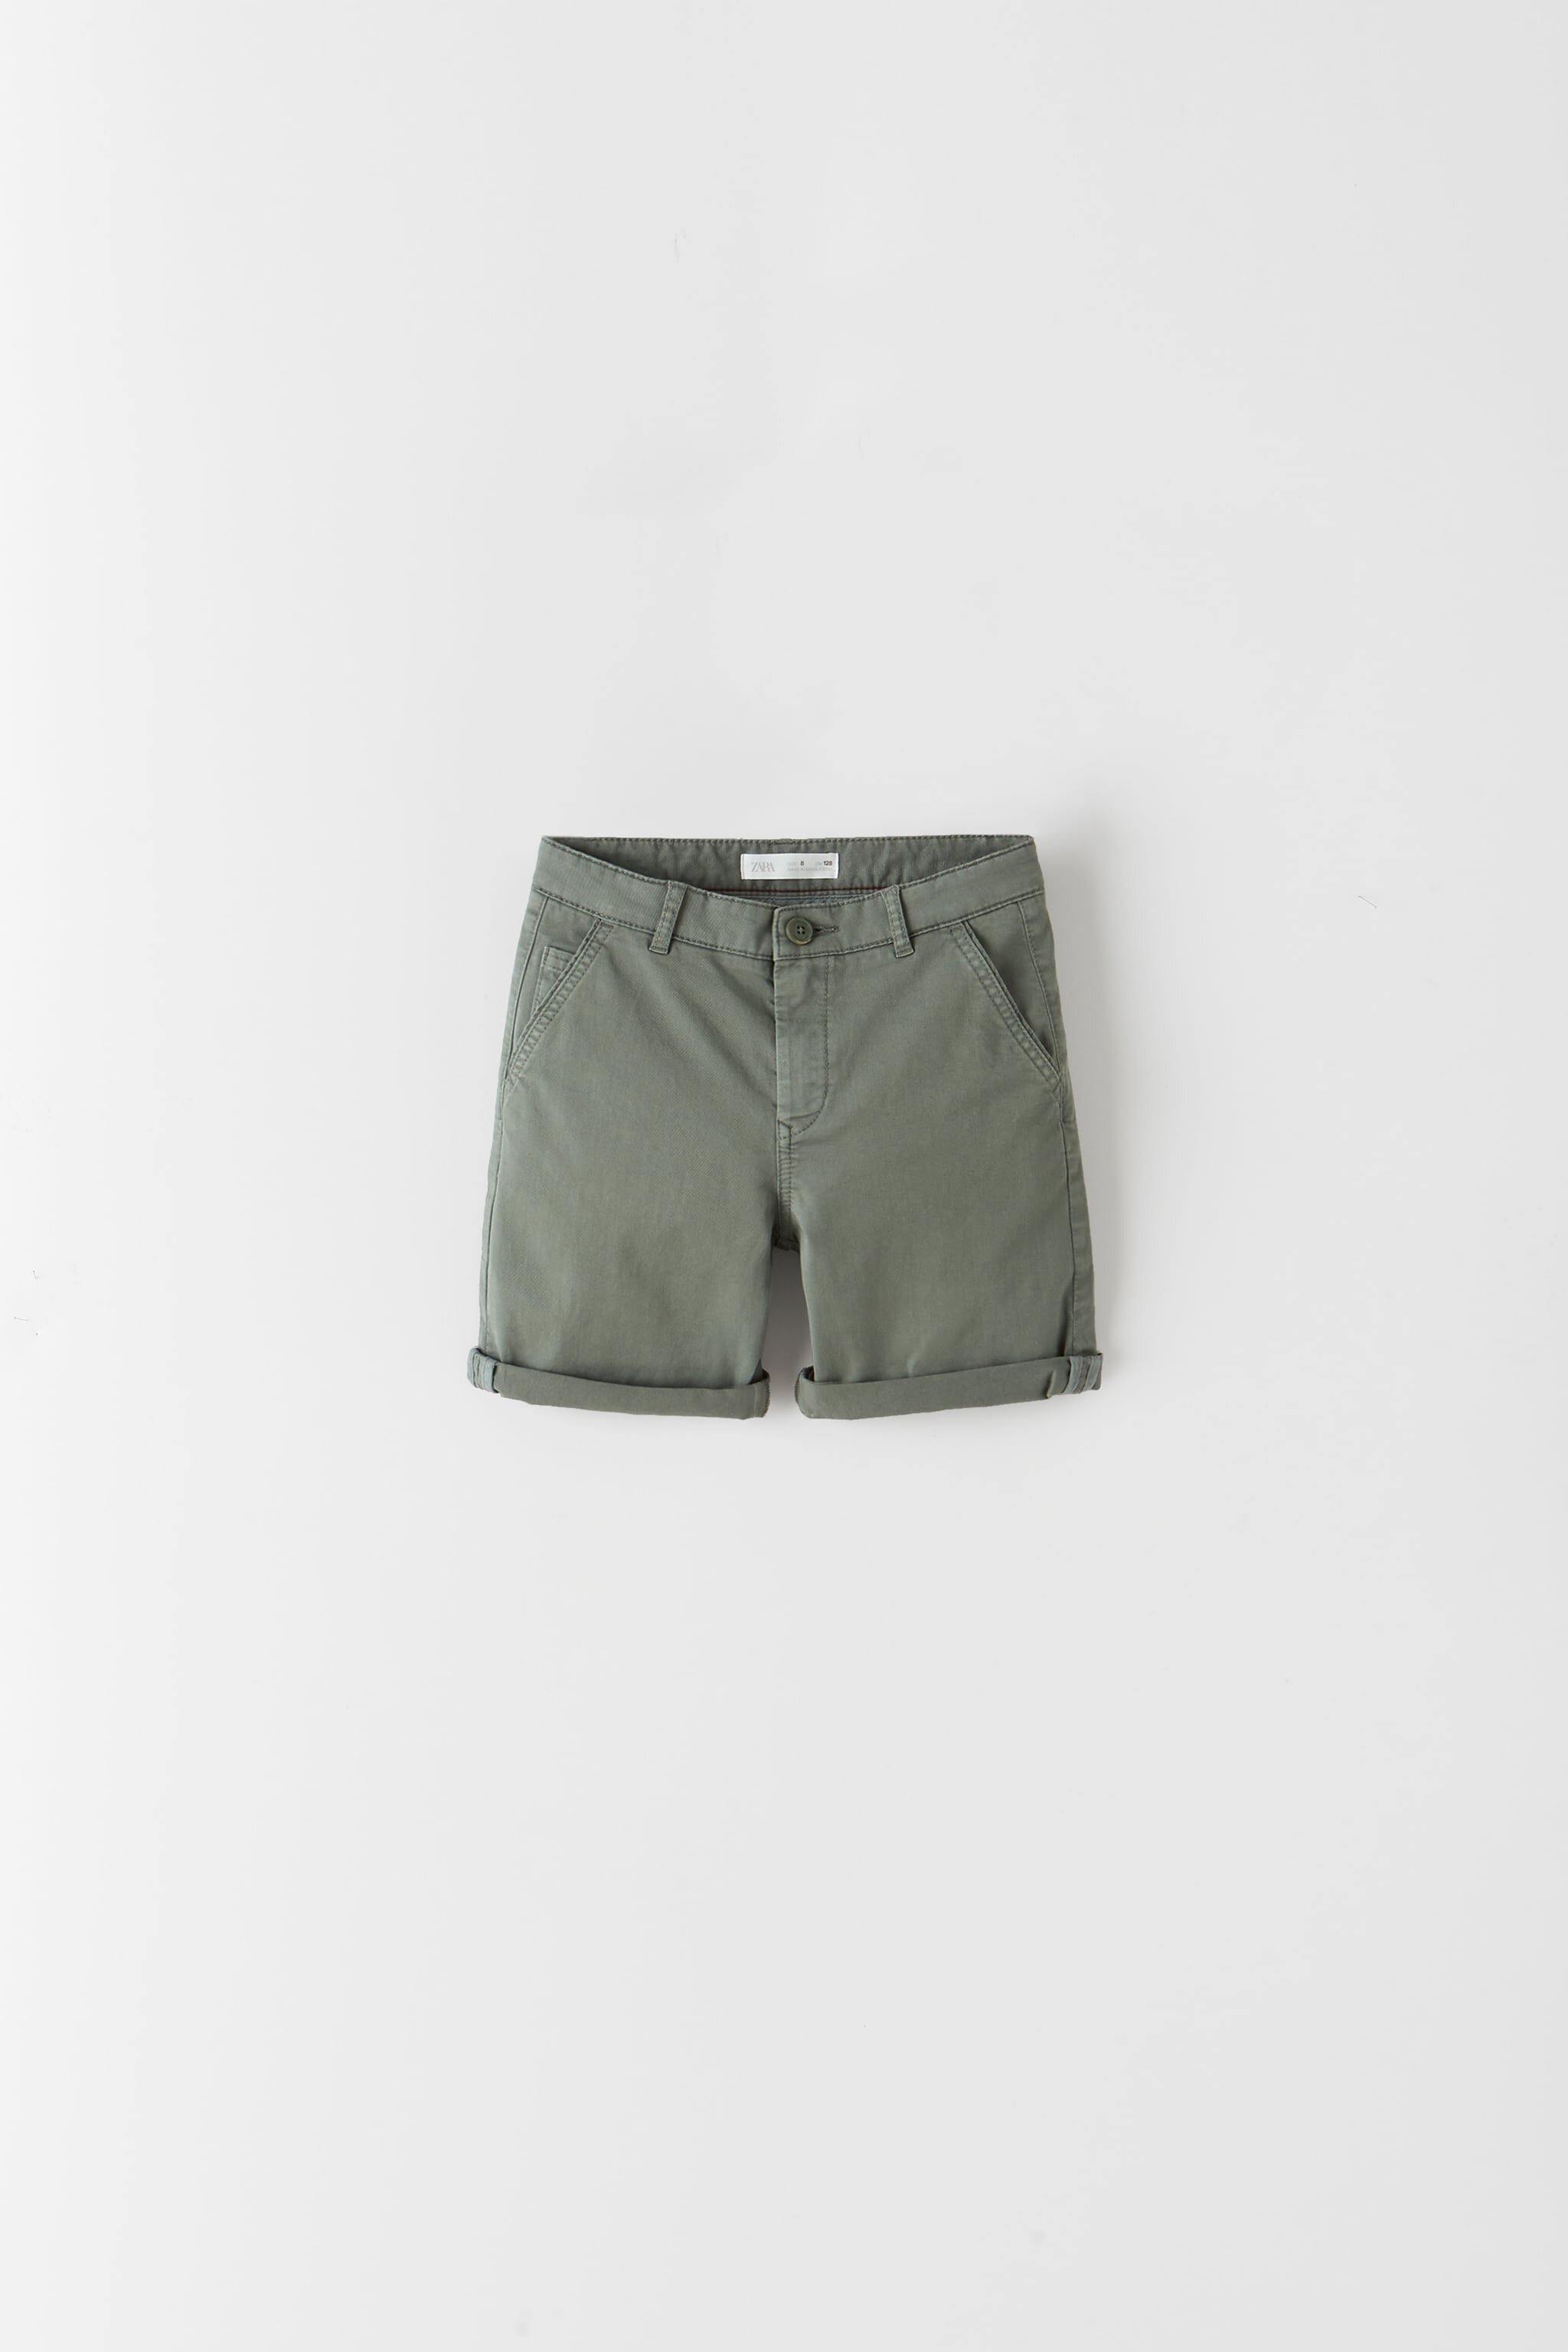 Chino Style Bermuda Shorts, ₱895